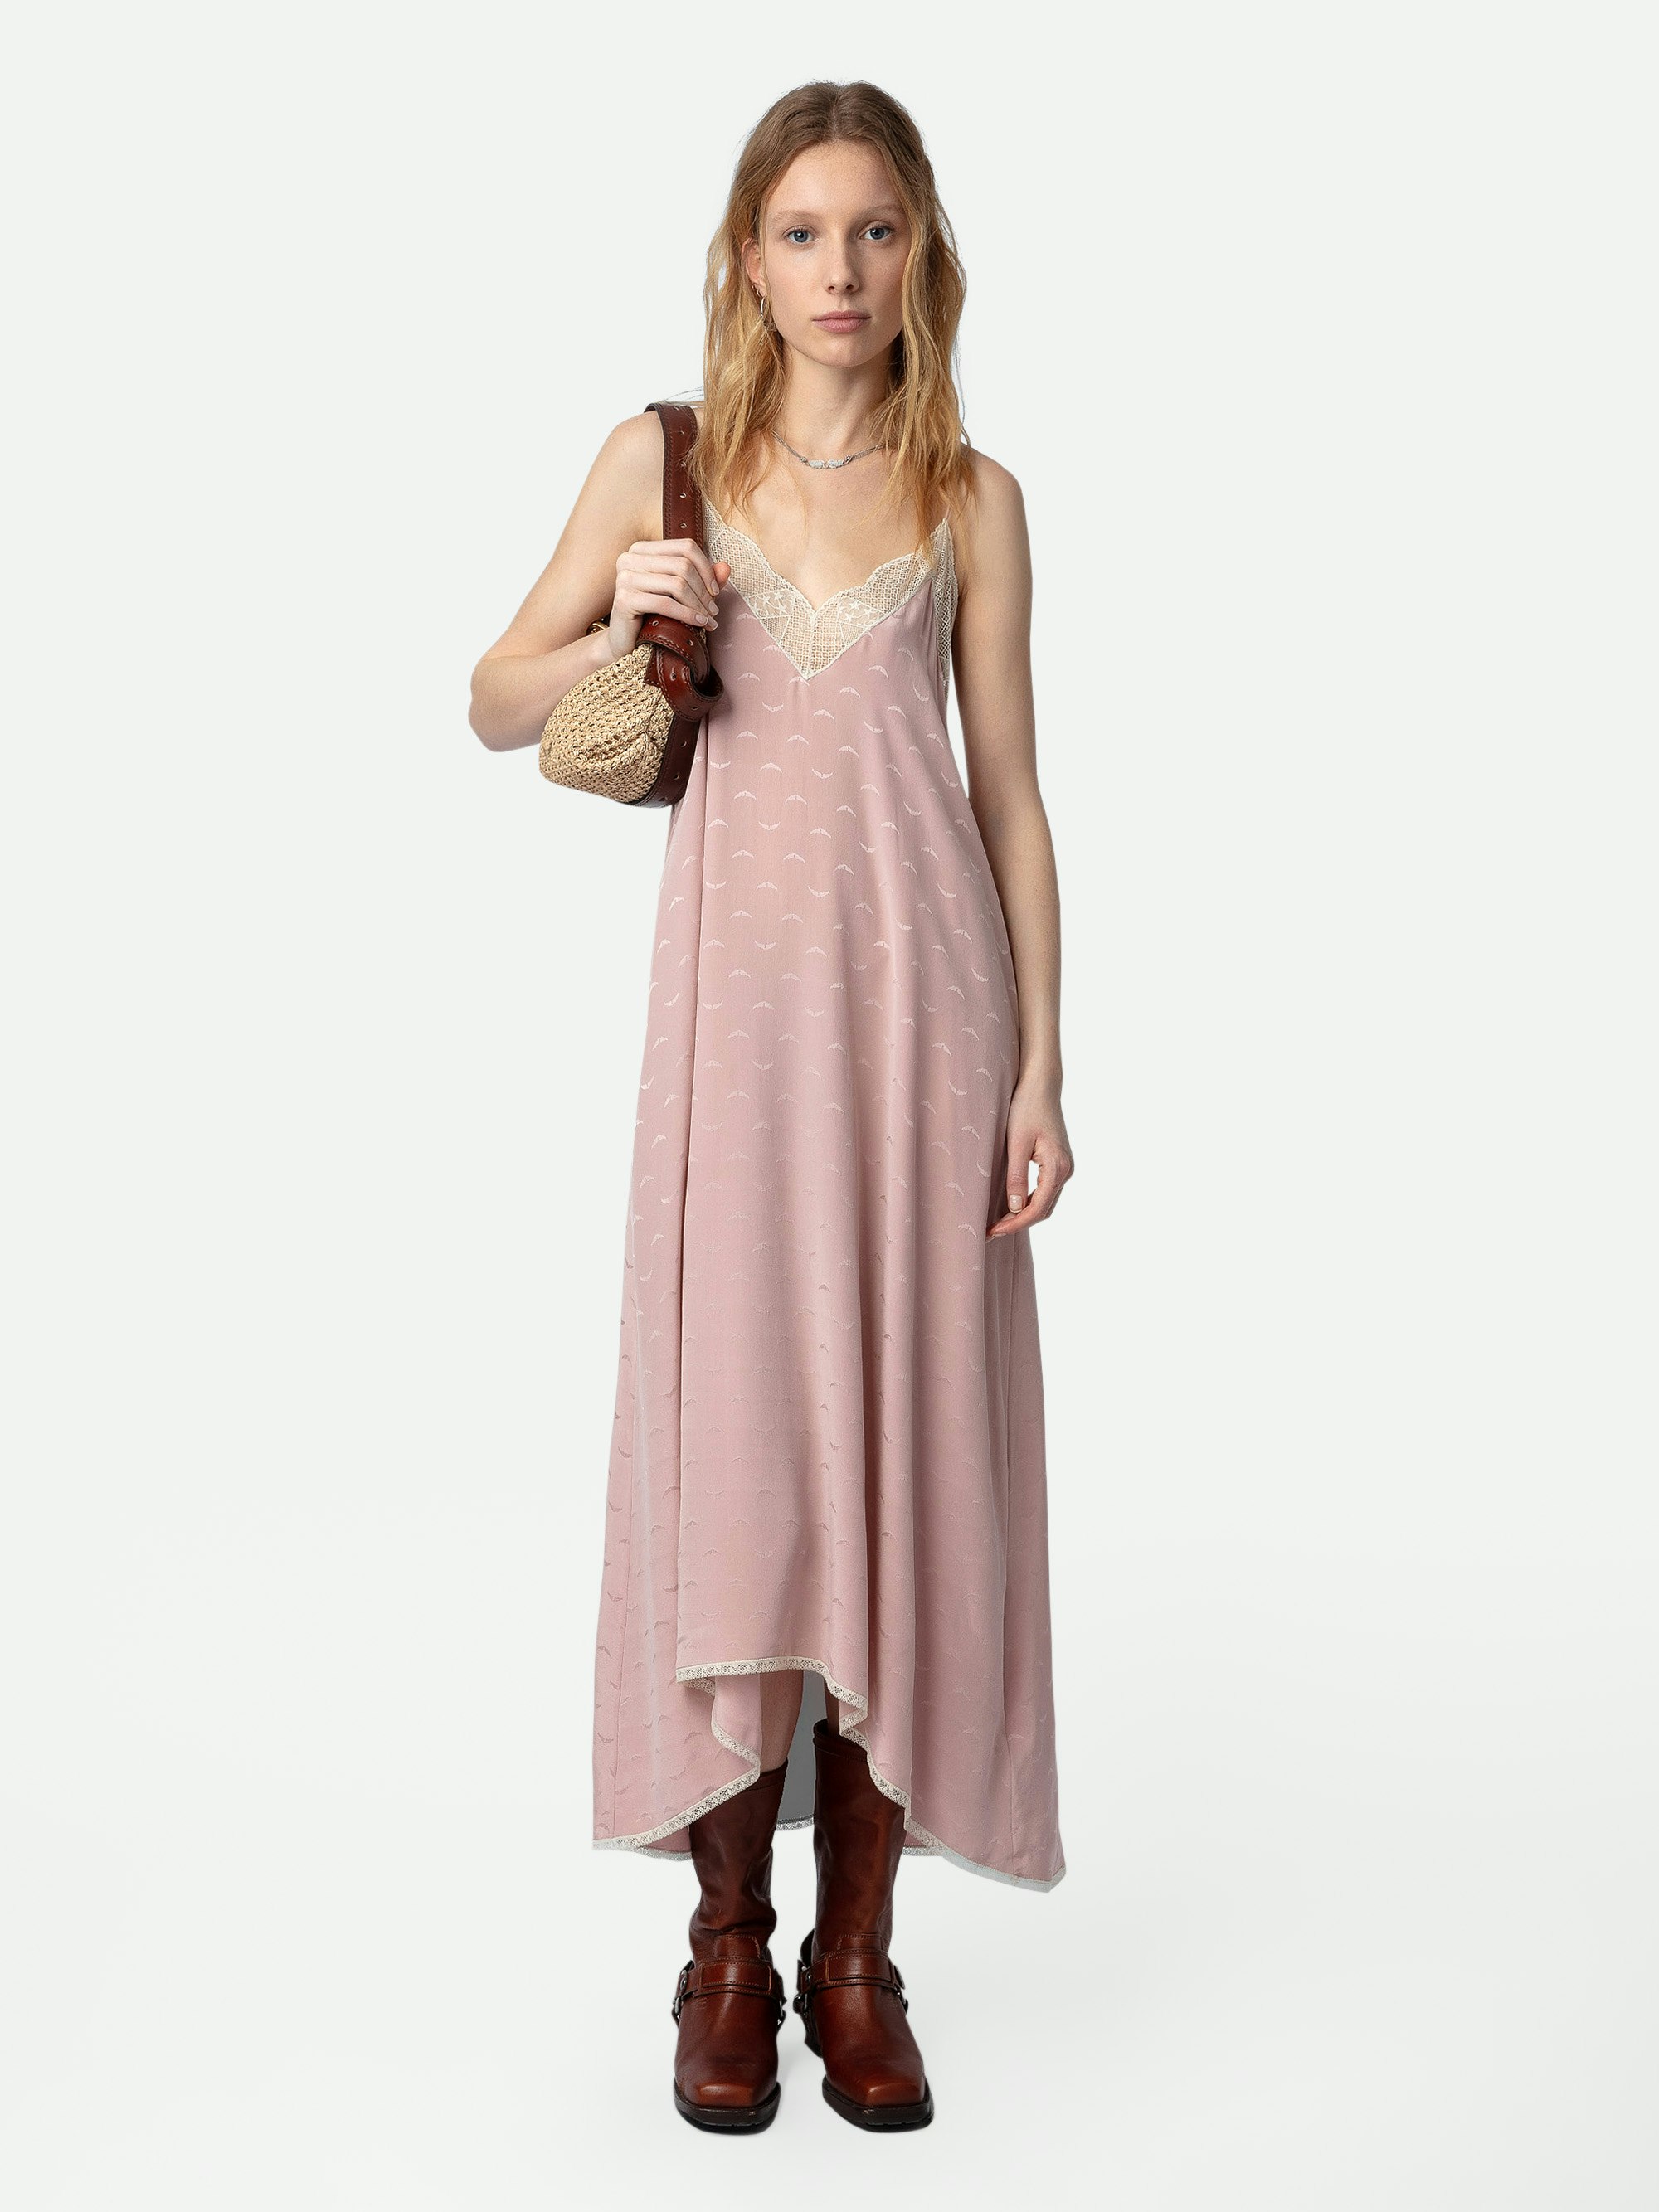 Kleid Risty Seide Jacquard - Langes, rosafarbenes Seidenkleid im Lingerie-Stil mit Jacquard-Flügeln, schmalen Trägern und Spitzendekolleté.